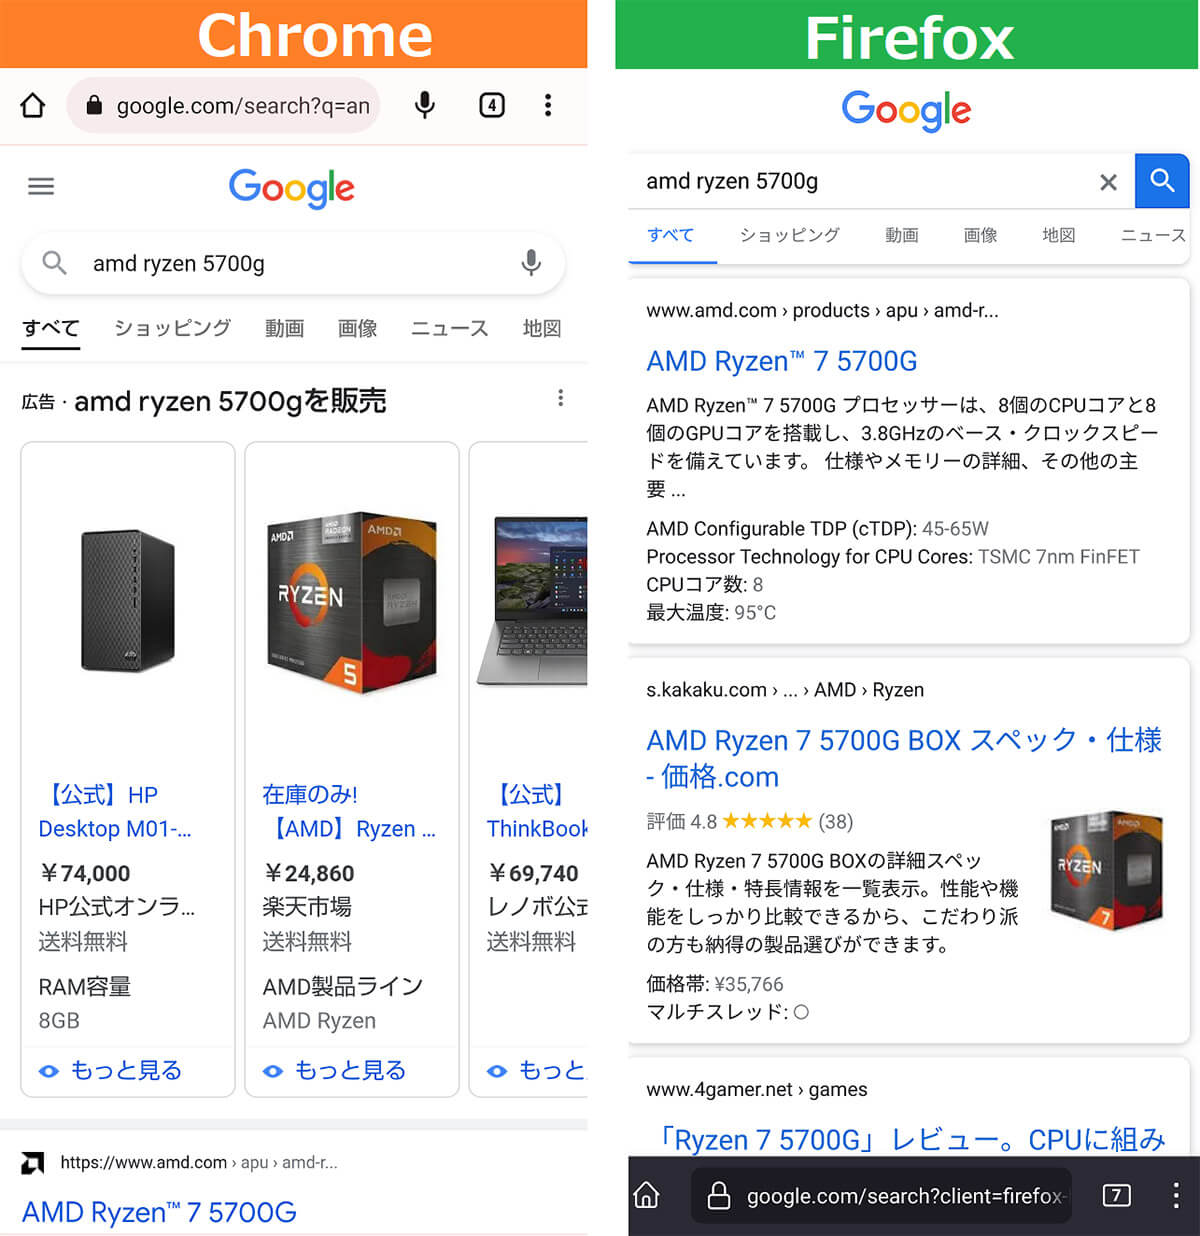 ChromeとFirefoxの広告表示比較